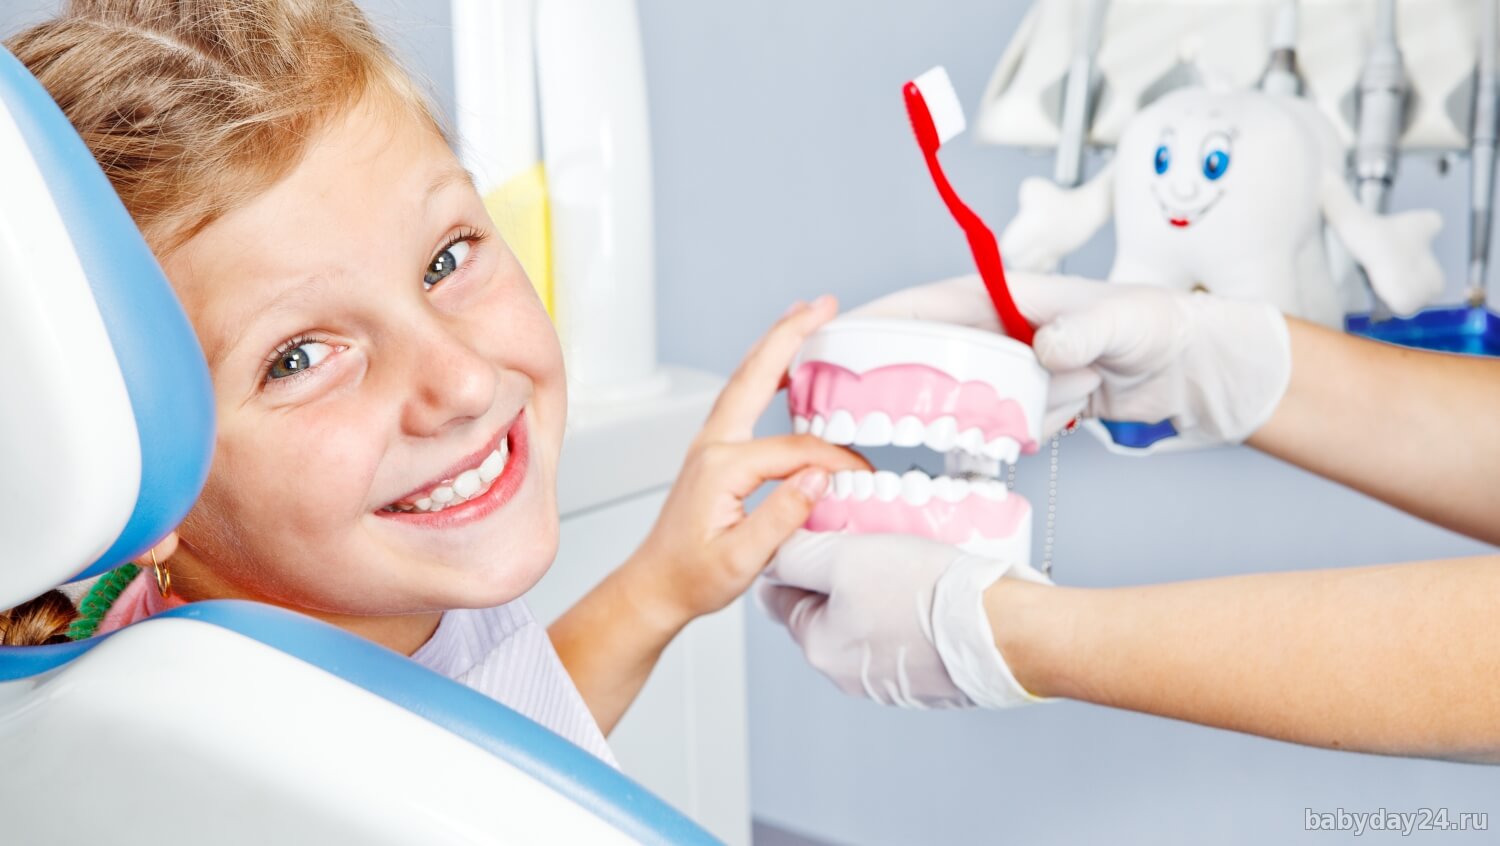 Детская стоматология отзывы о врачах. Детская стоматология. Стоматология дети. Ребенок у стоматолога. Детская гигиена полости рта.